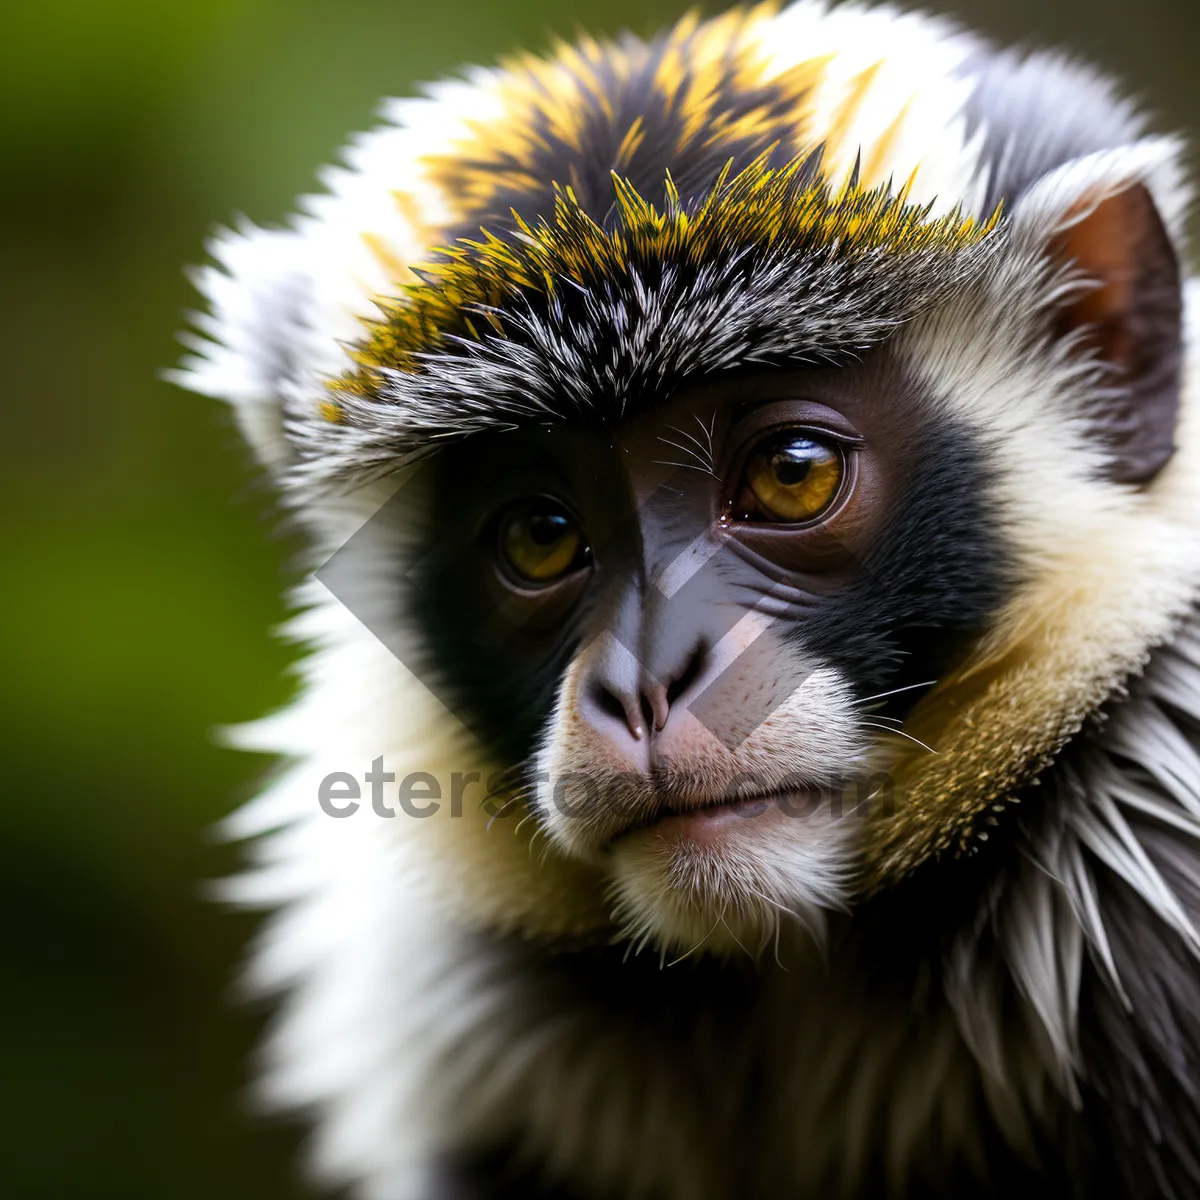 Picture of Wild Primate Face in Zoo Safari